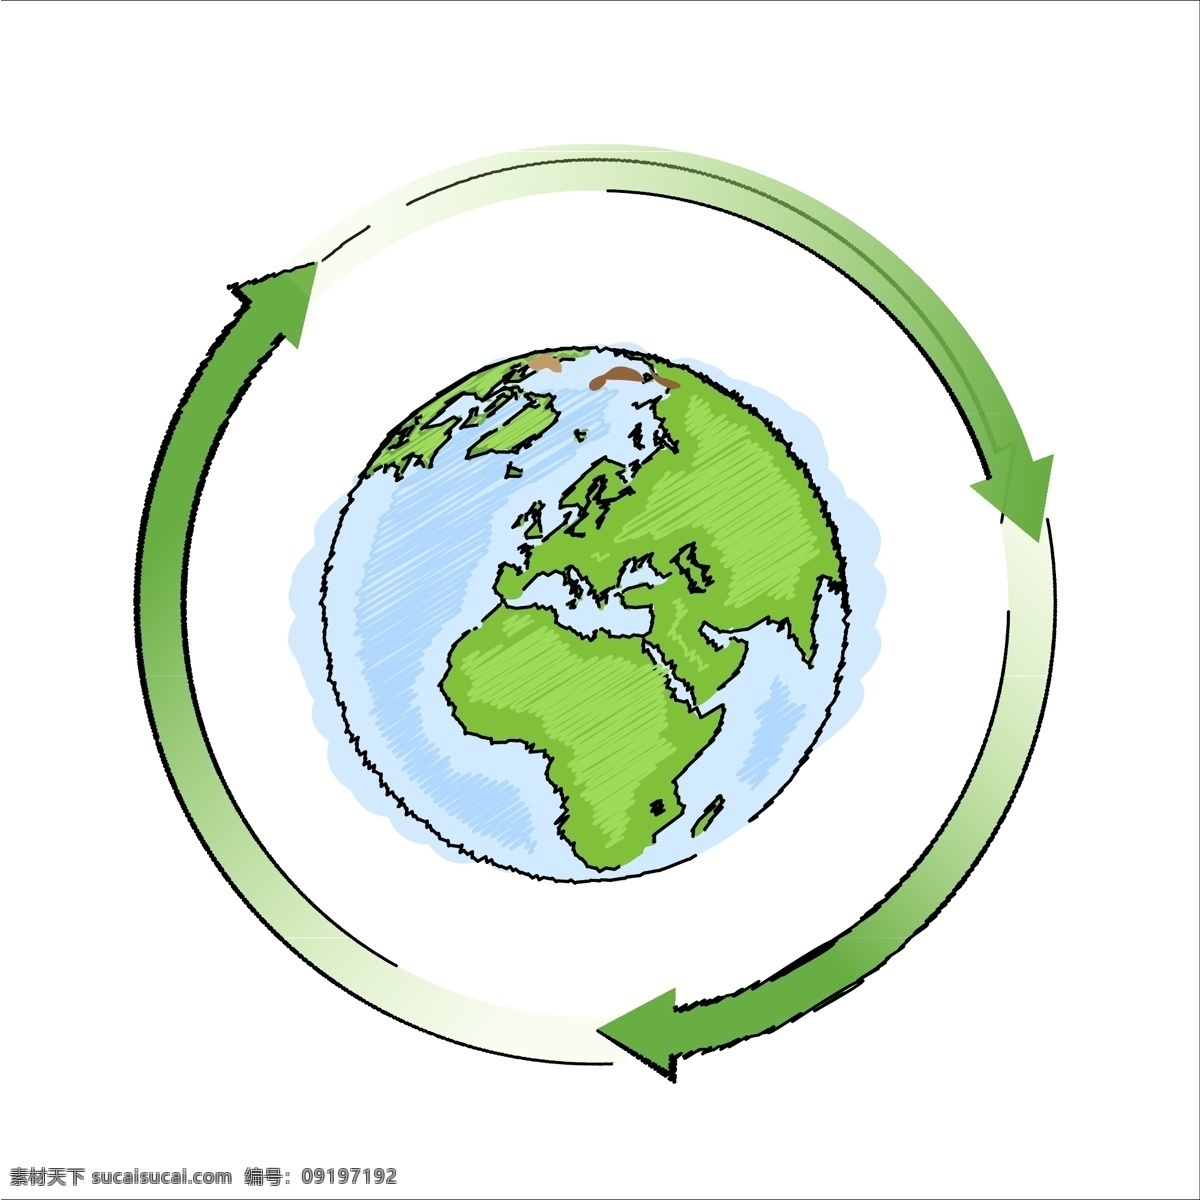 地球 循环 矢量 绿色 海洋 矢量素材 设计素材